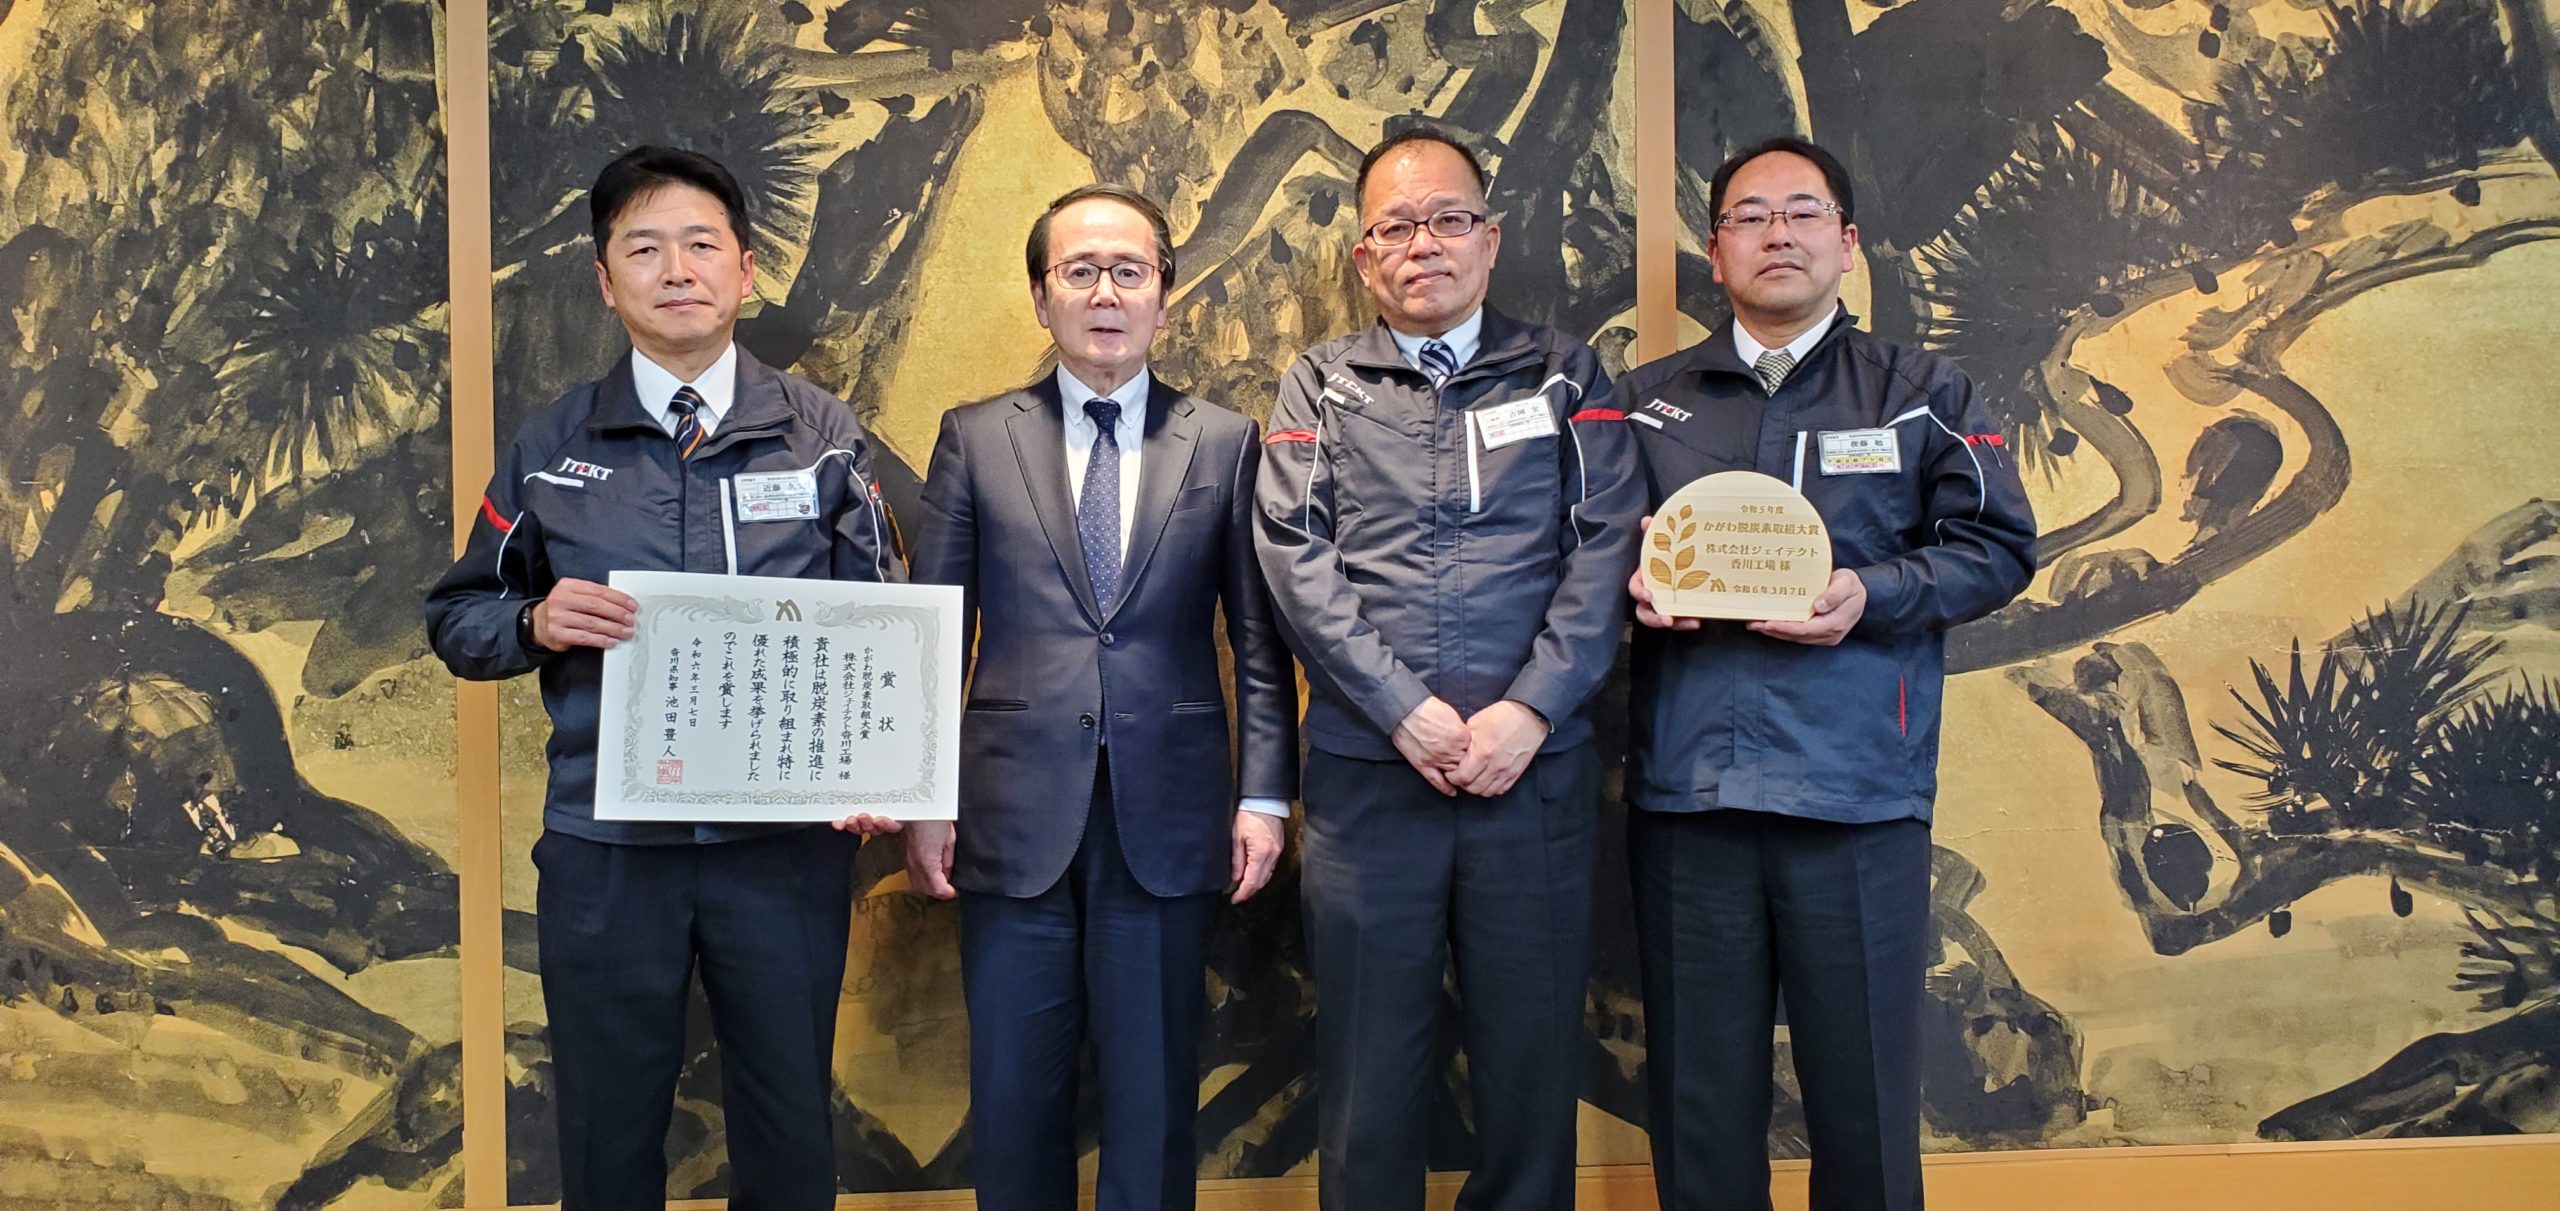 ジェイテクト、令和5年度かがわ脱炭素促進事業者表彰事業で香川工場が「かがわ脱炭素取組大賞」を受賞